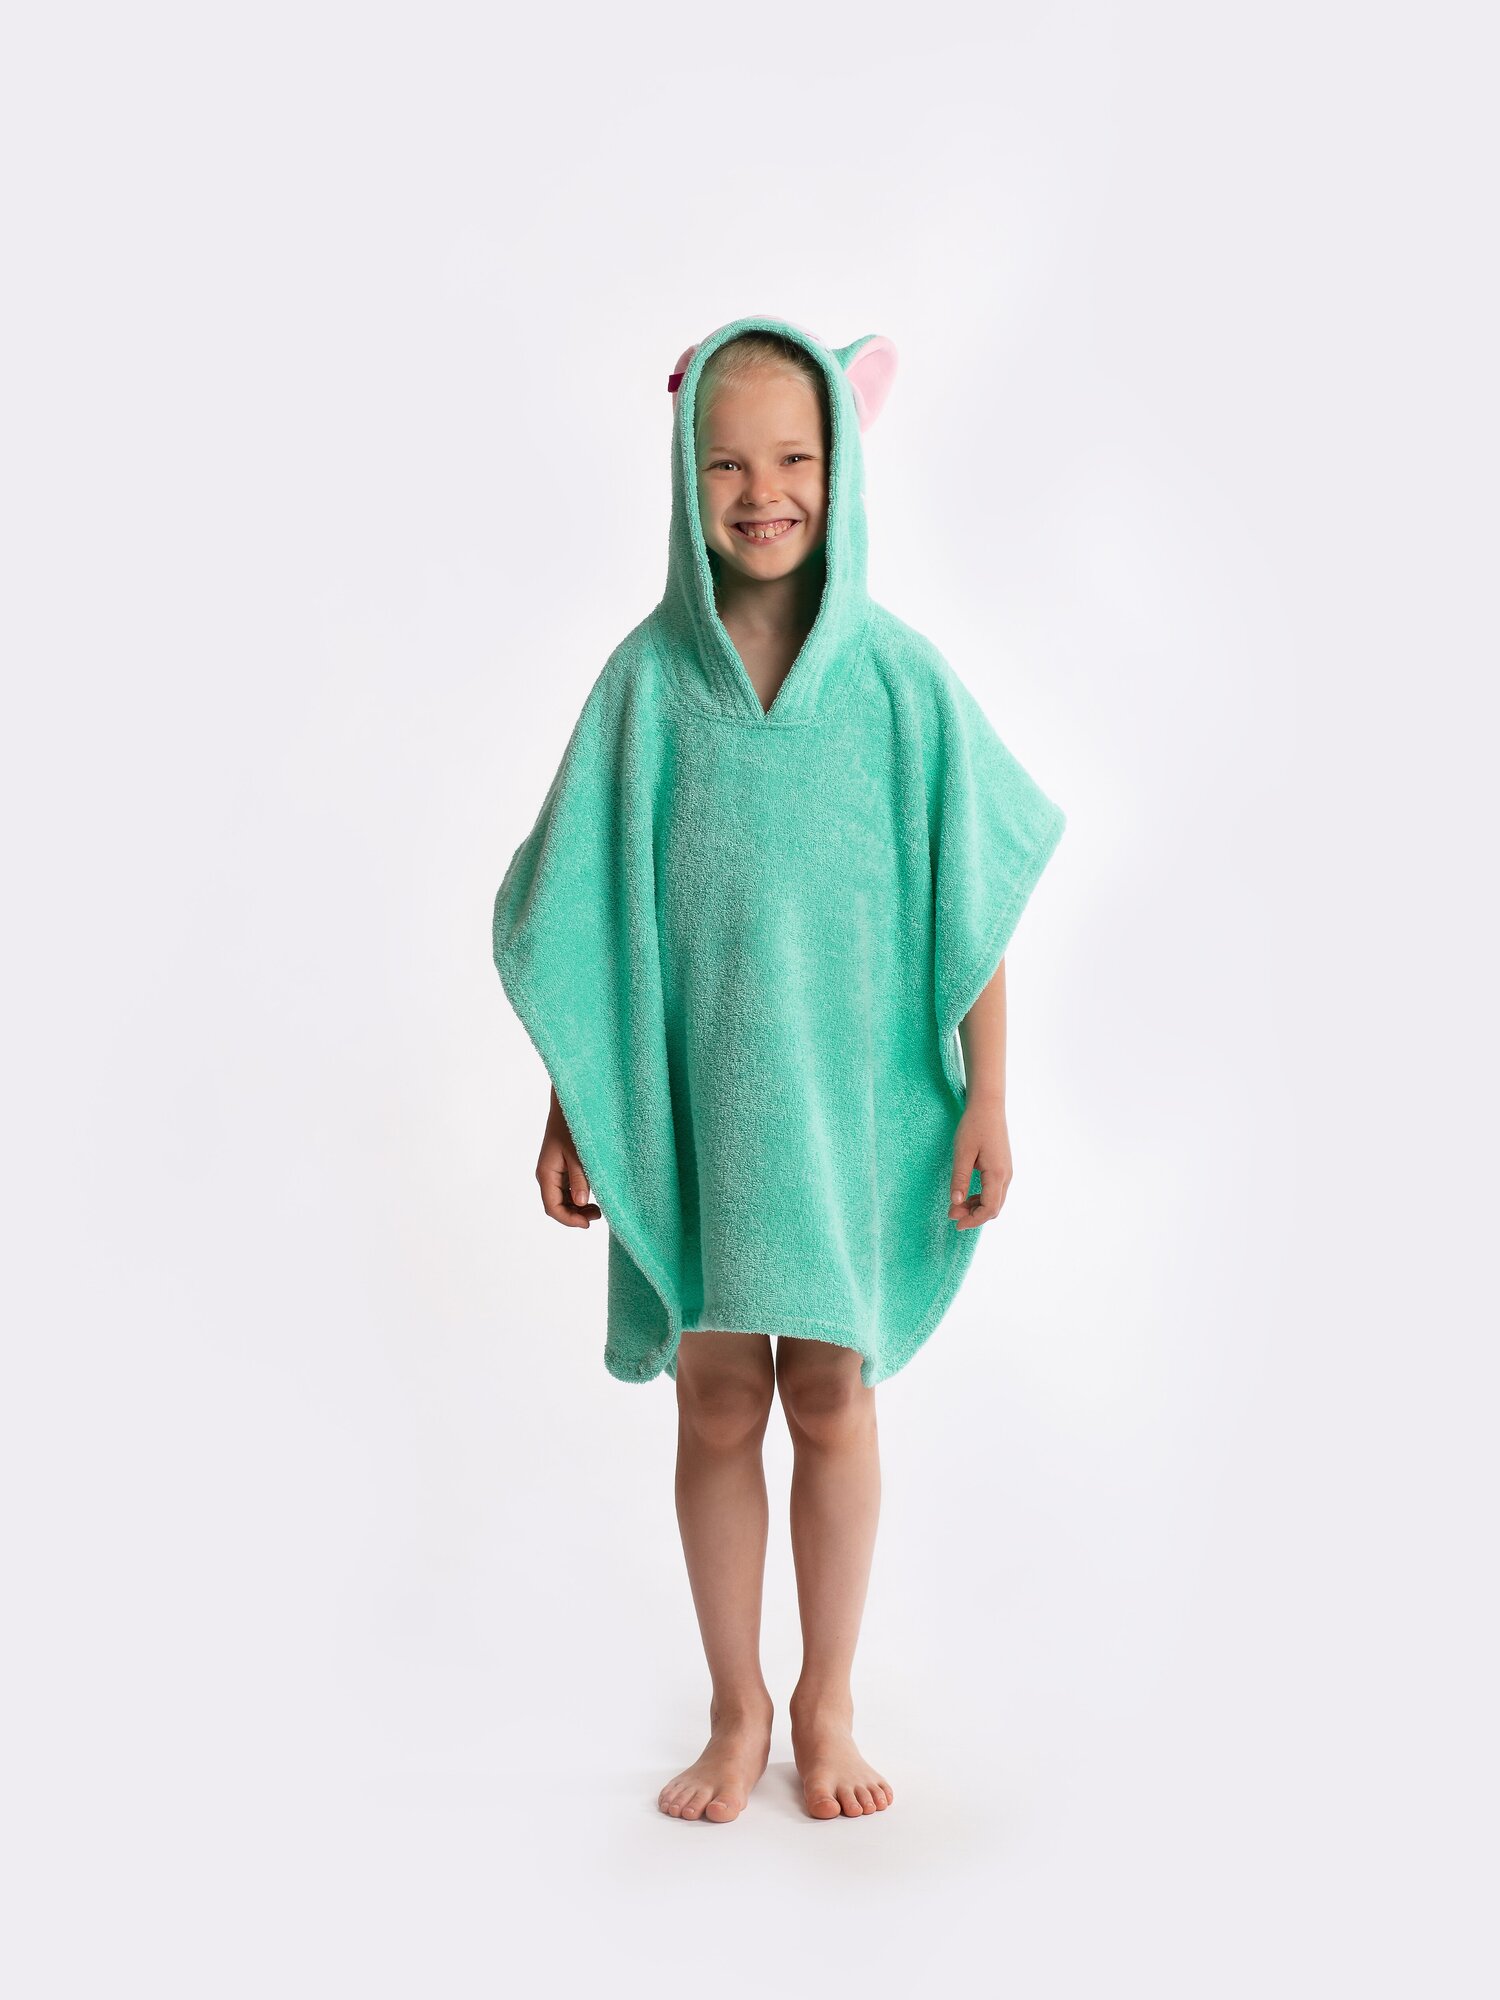 Полотенце-пончо Fluffy Bunny Кошка, цвет Светло-зеленый, Размер 132Х67см, 100% хлопок, 380гр/м2